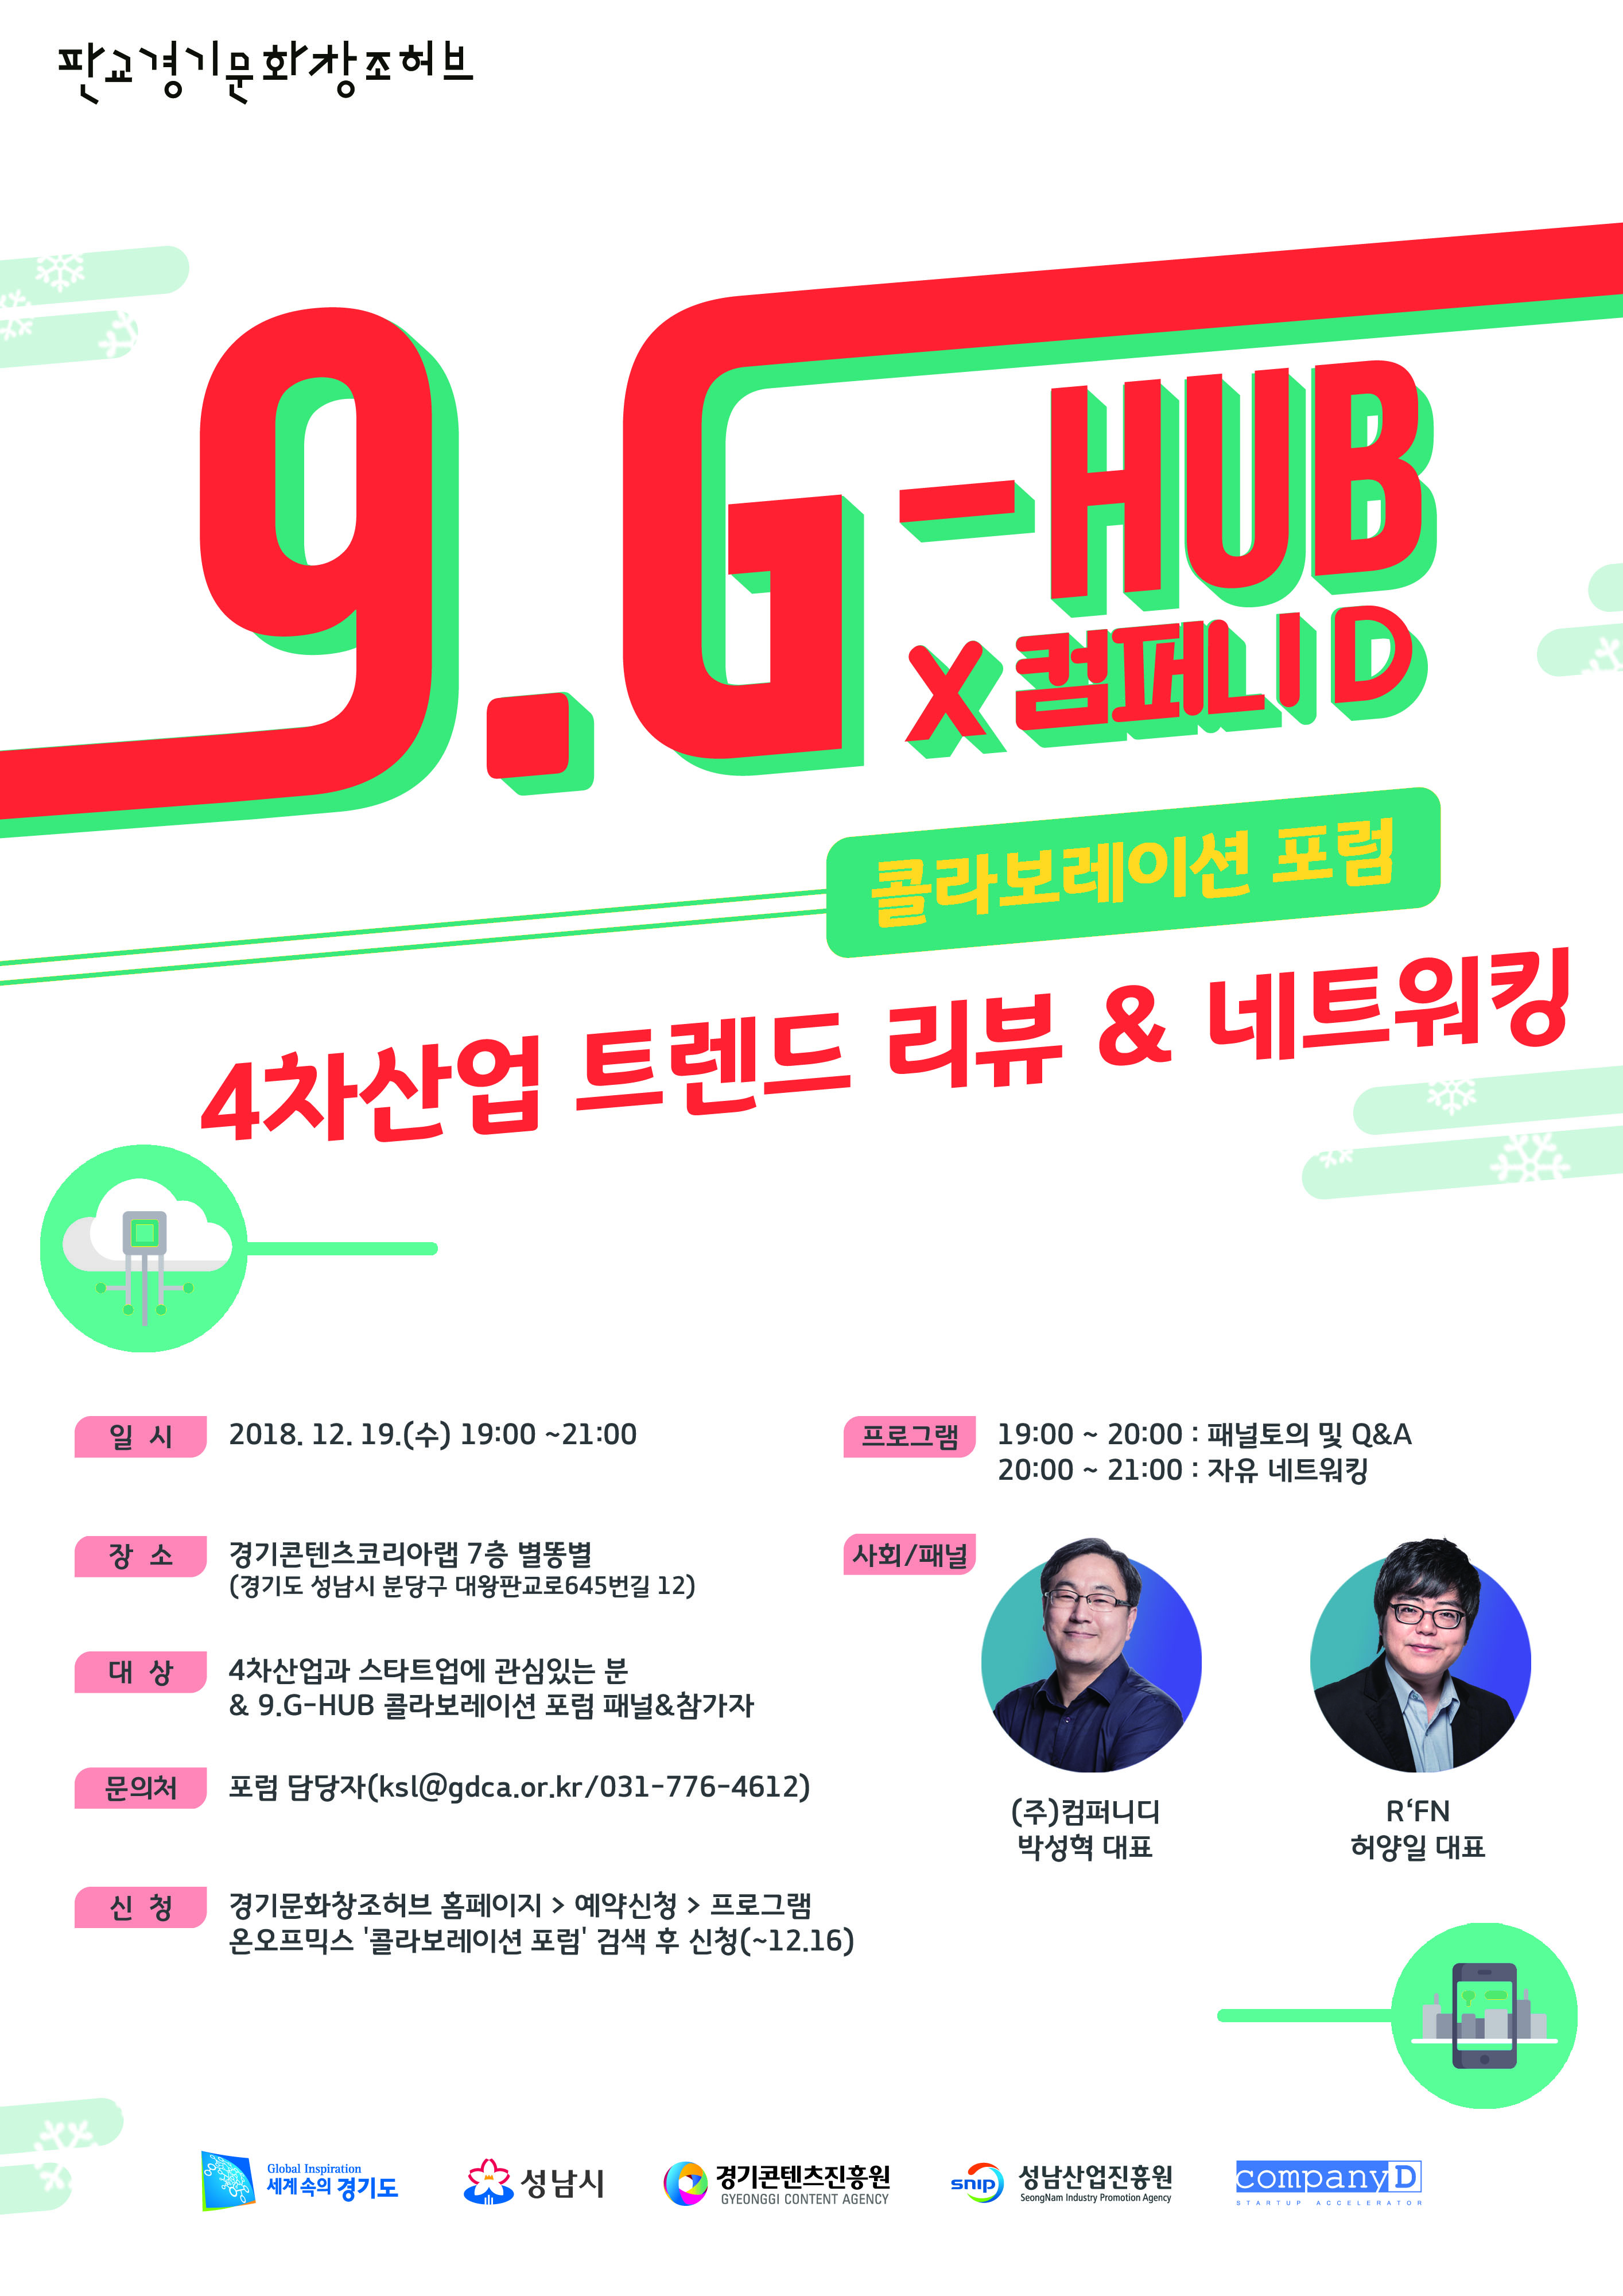 9.G-HUB X 컴퍼니D 콜라보레이션 포럼 : 4차산업 트렌드..